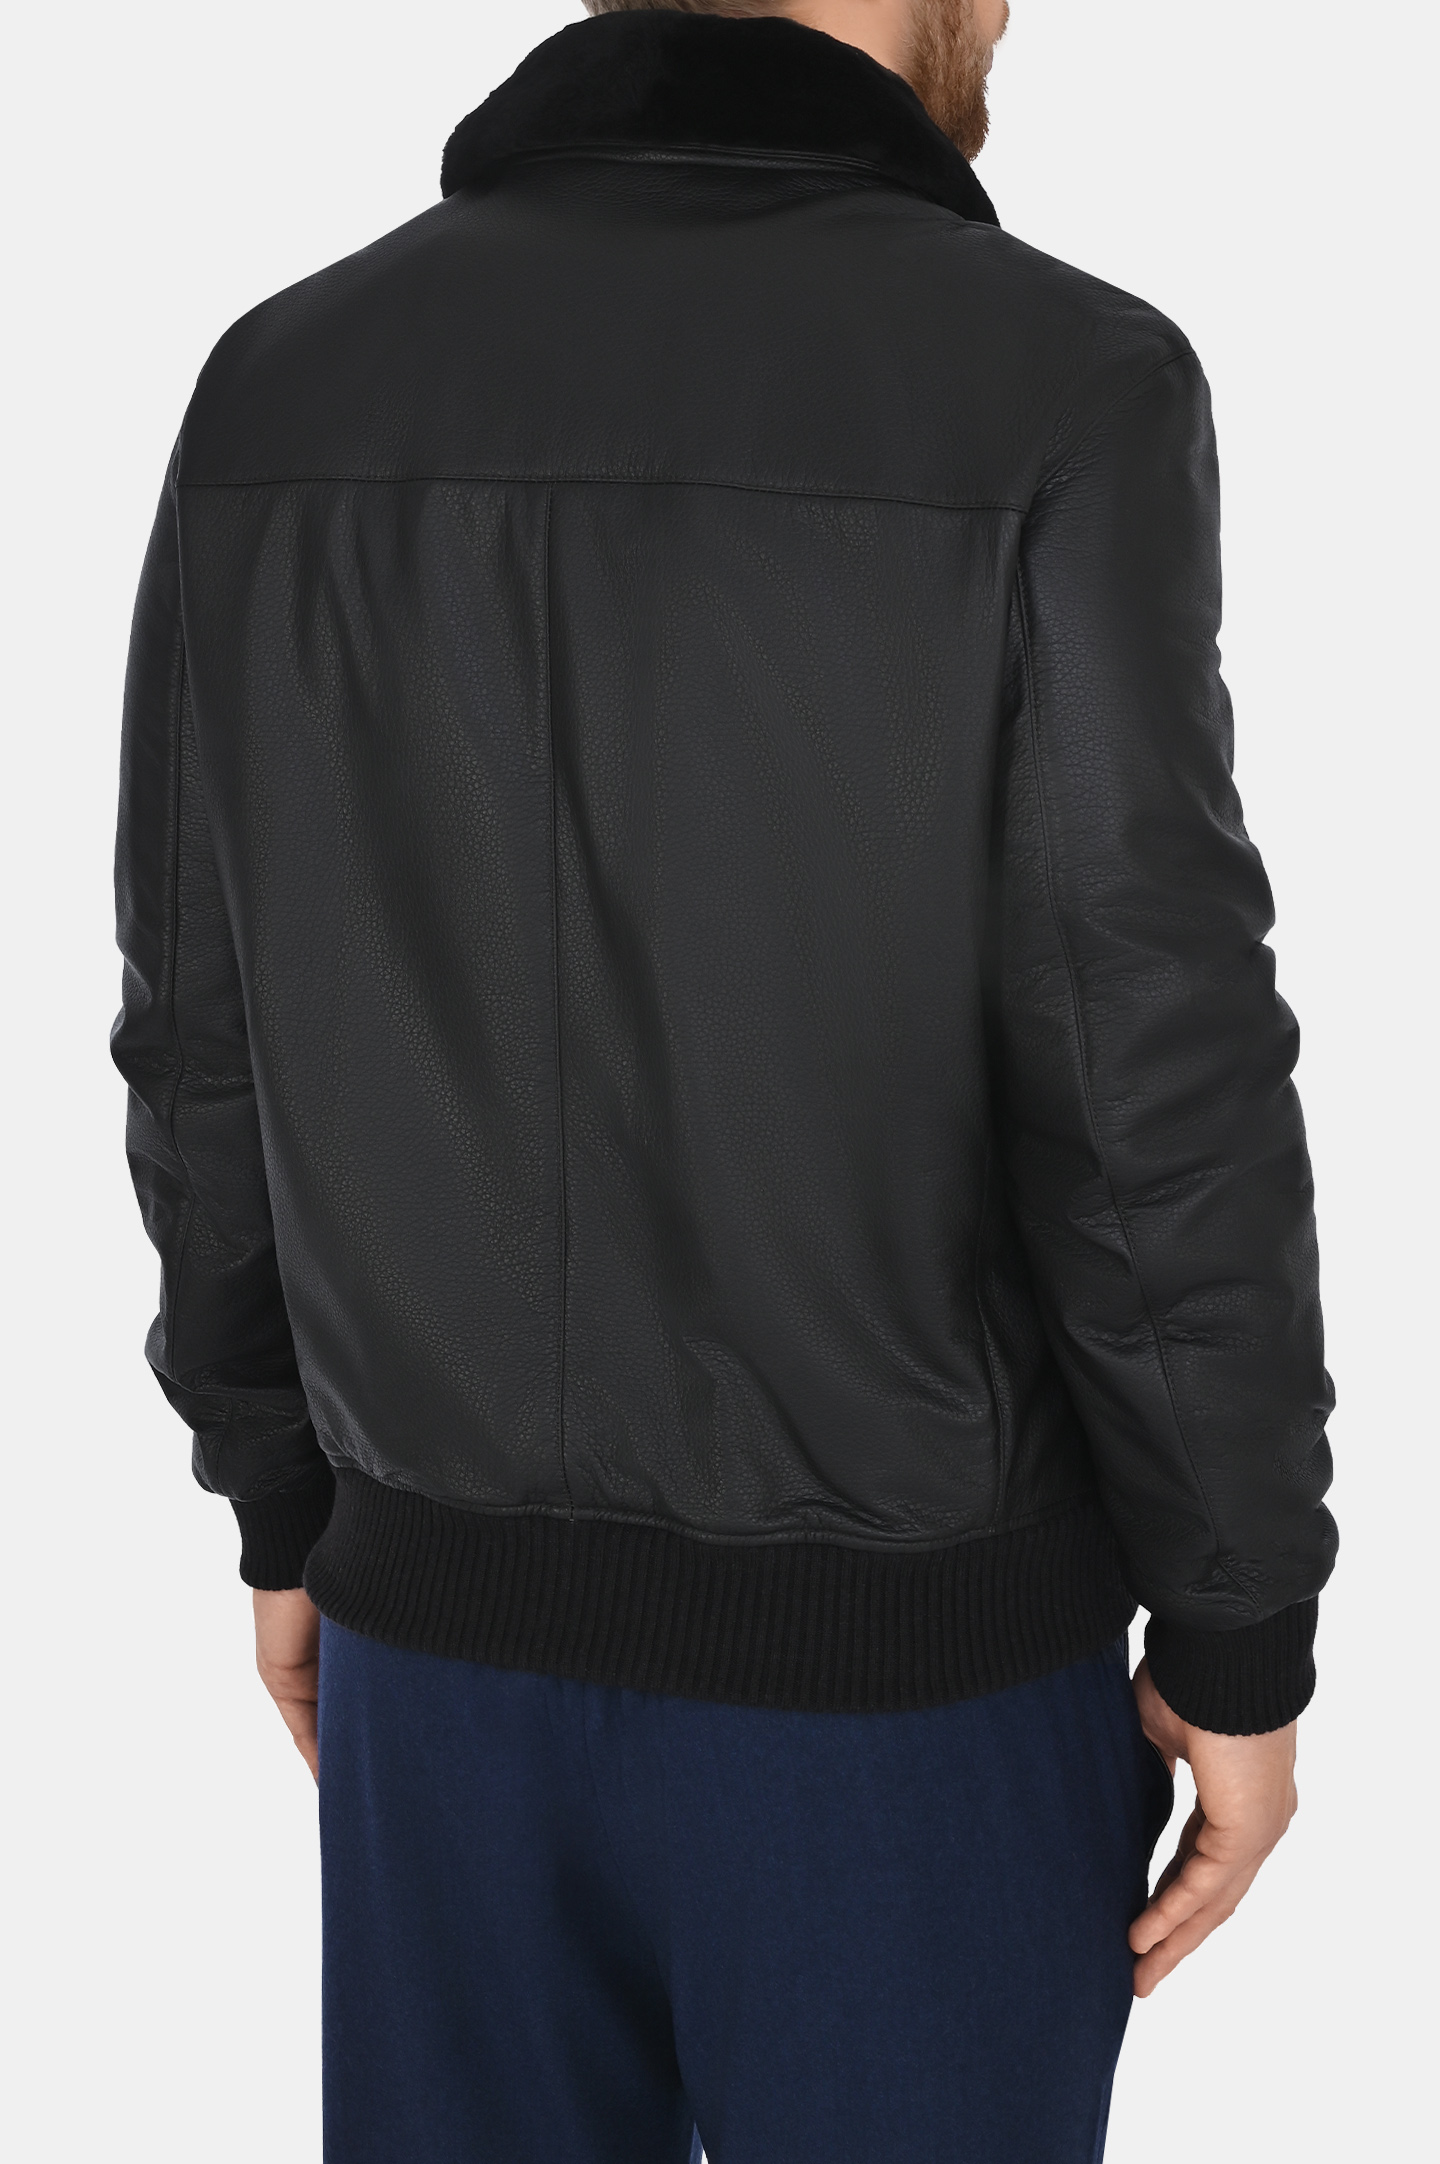 Куртка MANDELLI A23-A7T106-5901, цвет: Темно-коричневый, Мужской